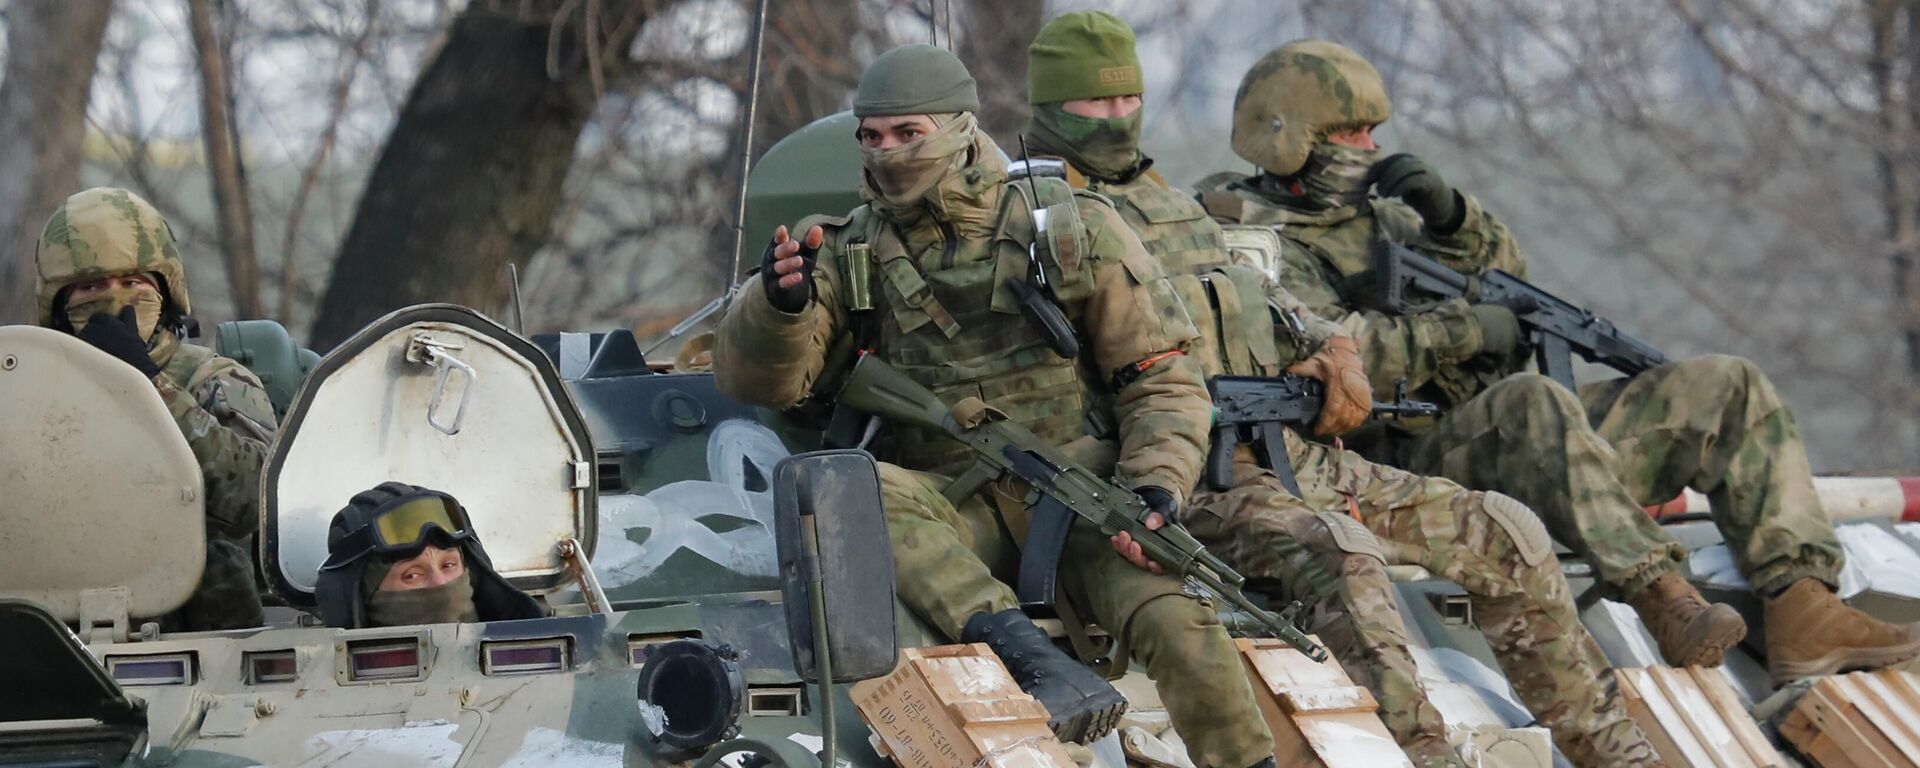 Em Belgorod, na Rússia, soldados russos são transportados em um blindado na fronteira com a Ucrânia, em 24 de fevereiro de 2022 - Sputnik Brasil, 1920, 25.02.2022